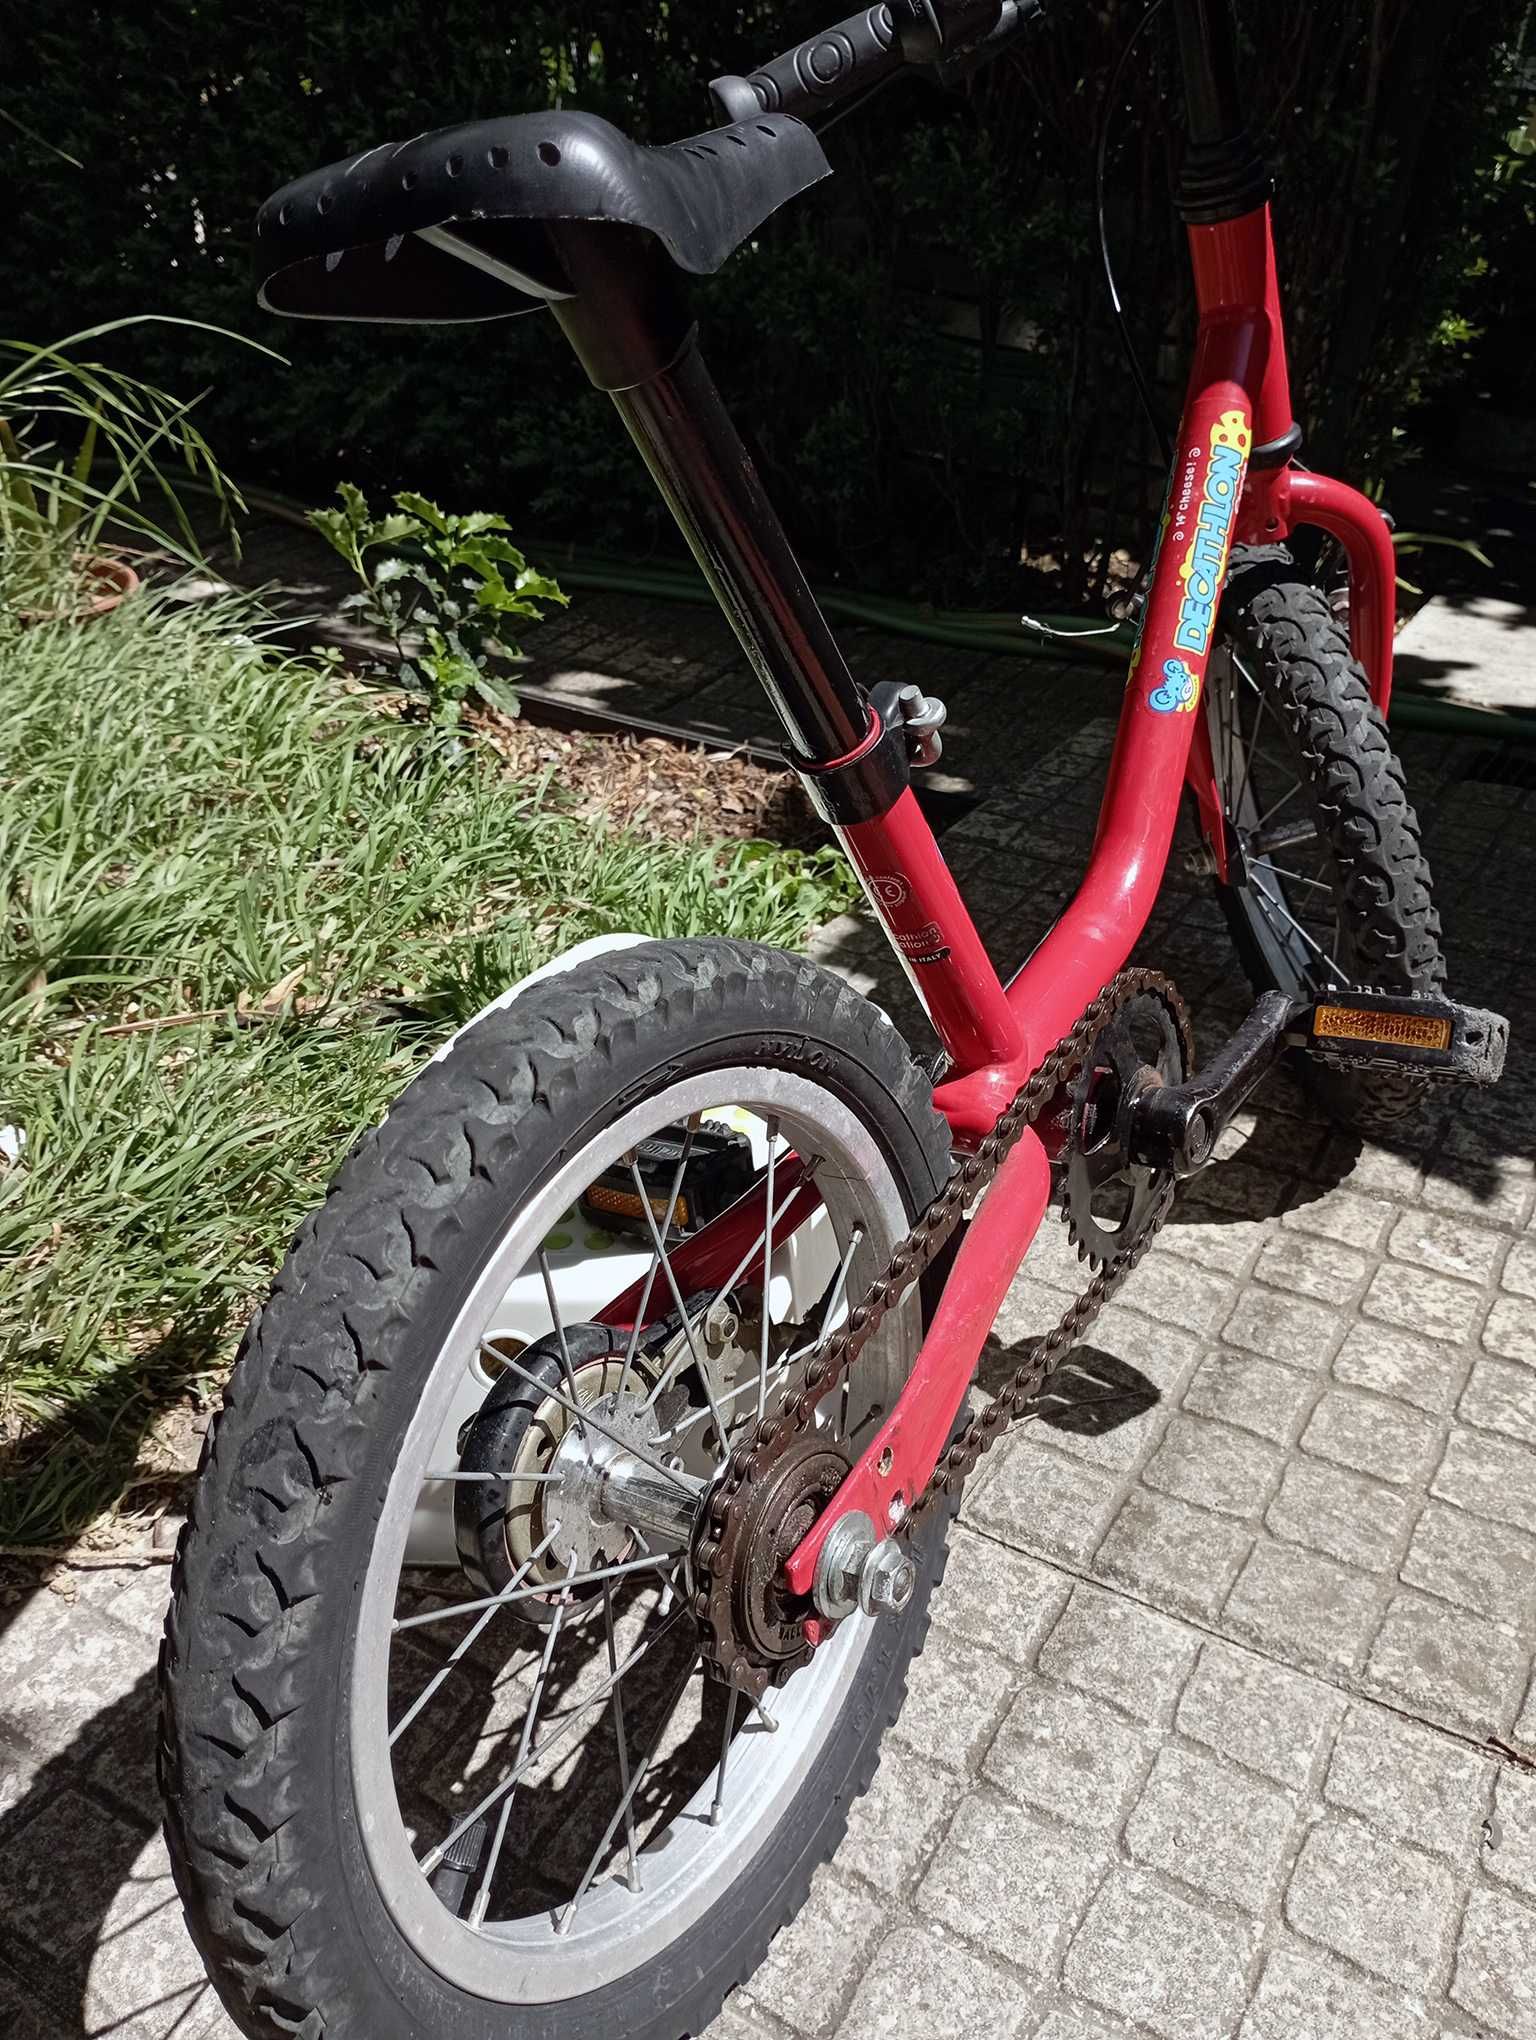 Bicicleta de Criança Vermelha